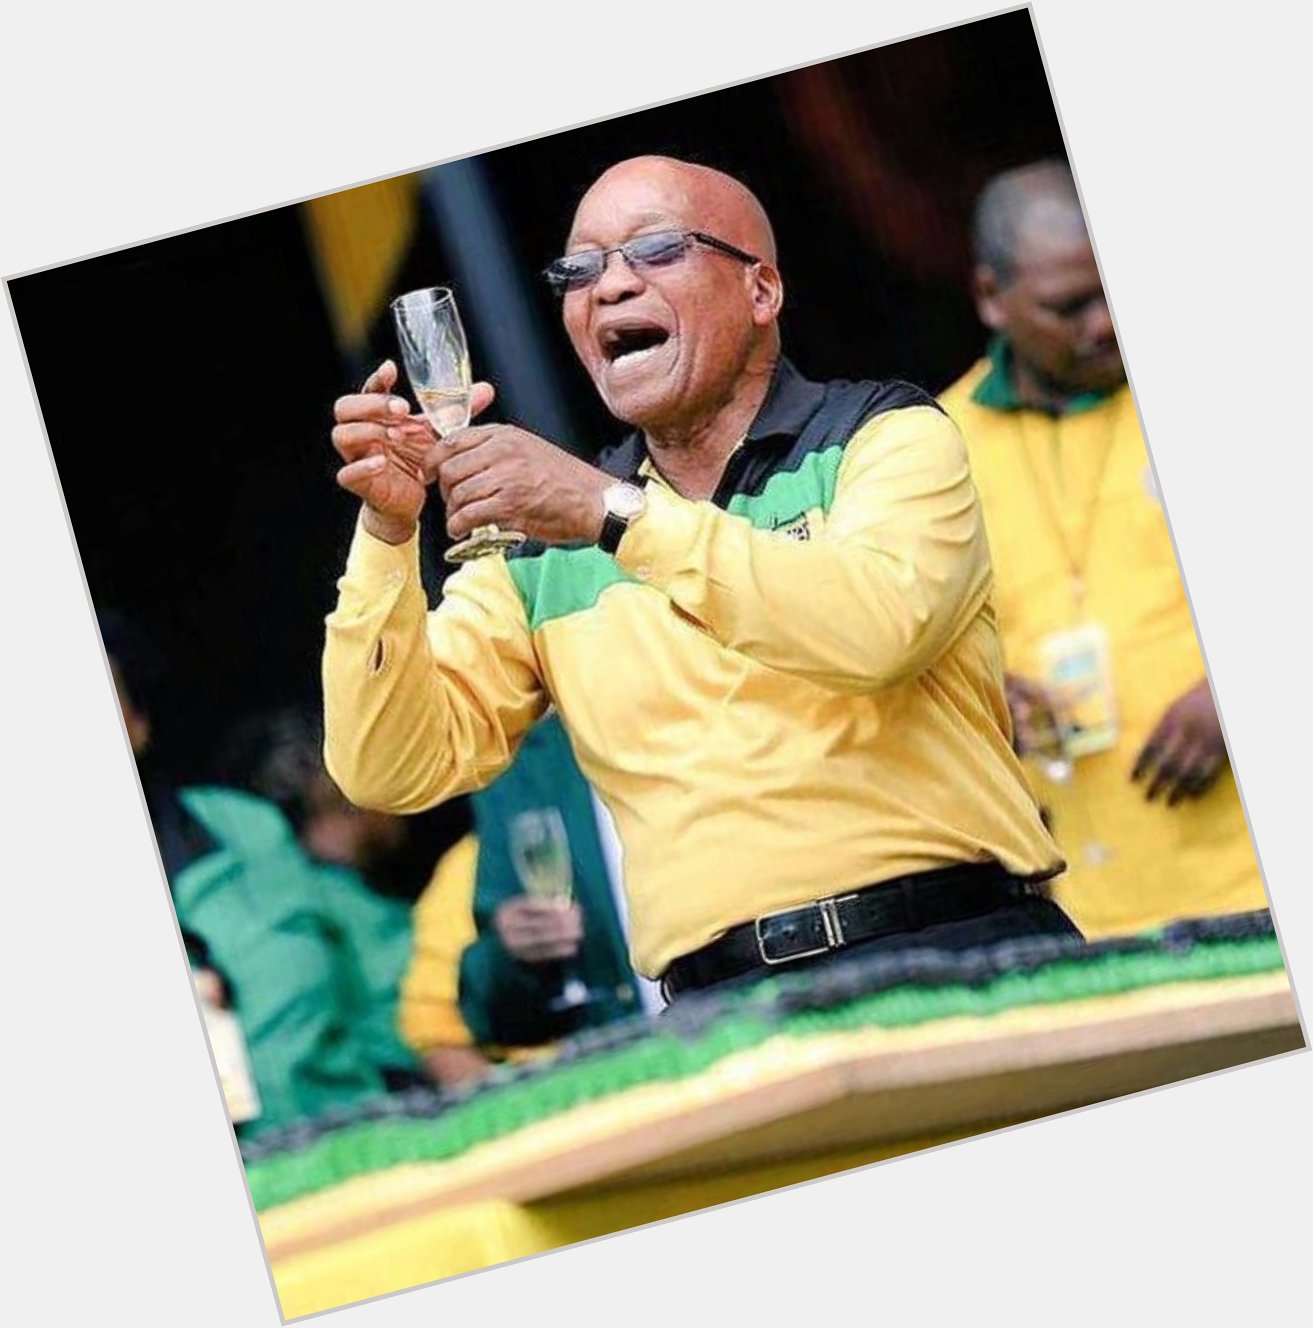 Happy birthday to Jacob Zuma 